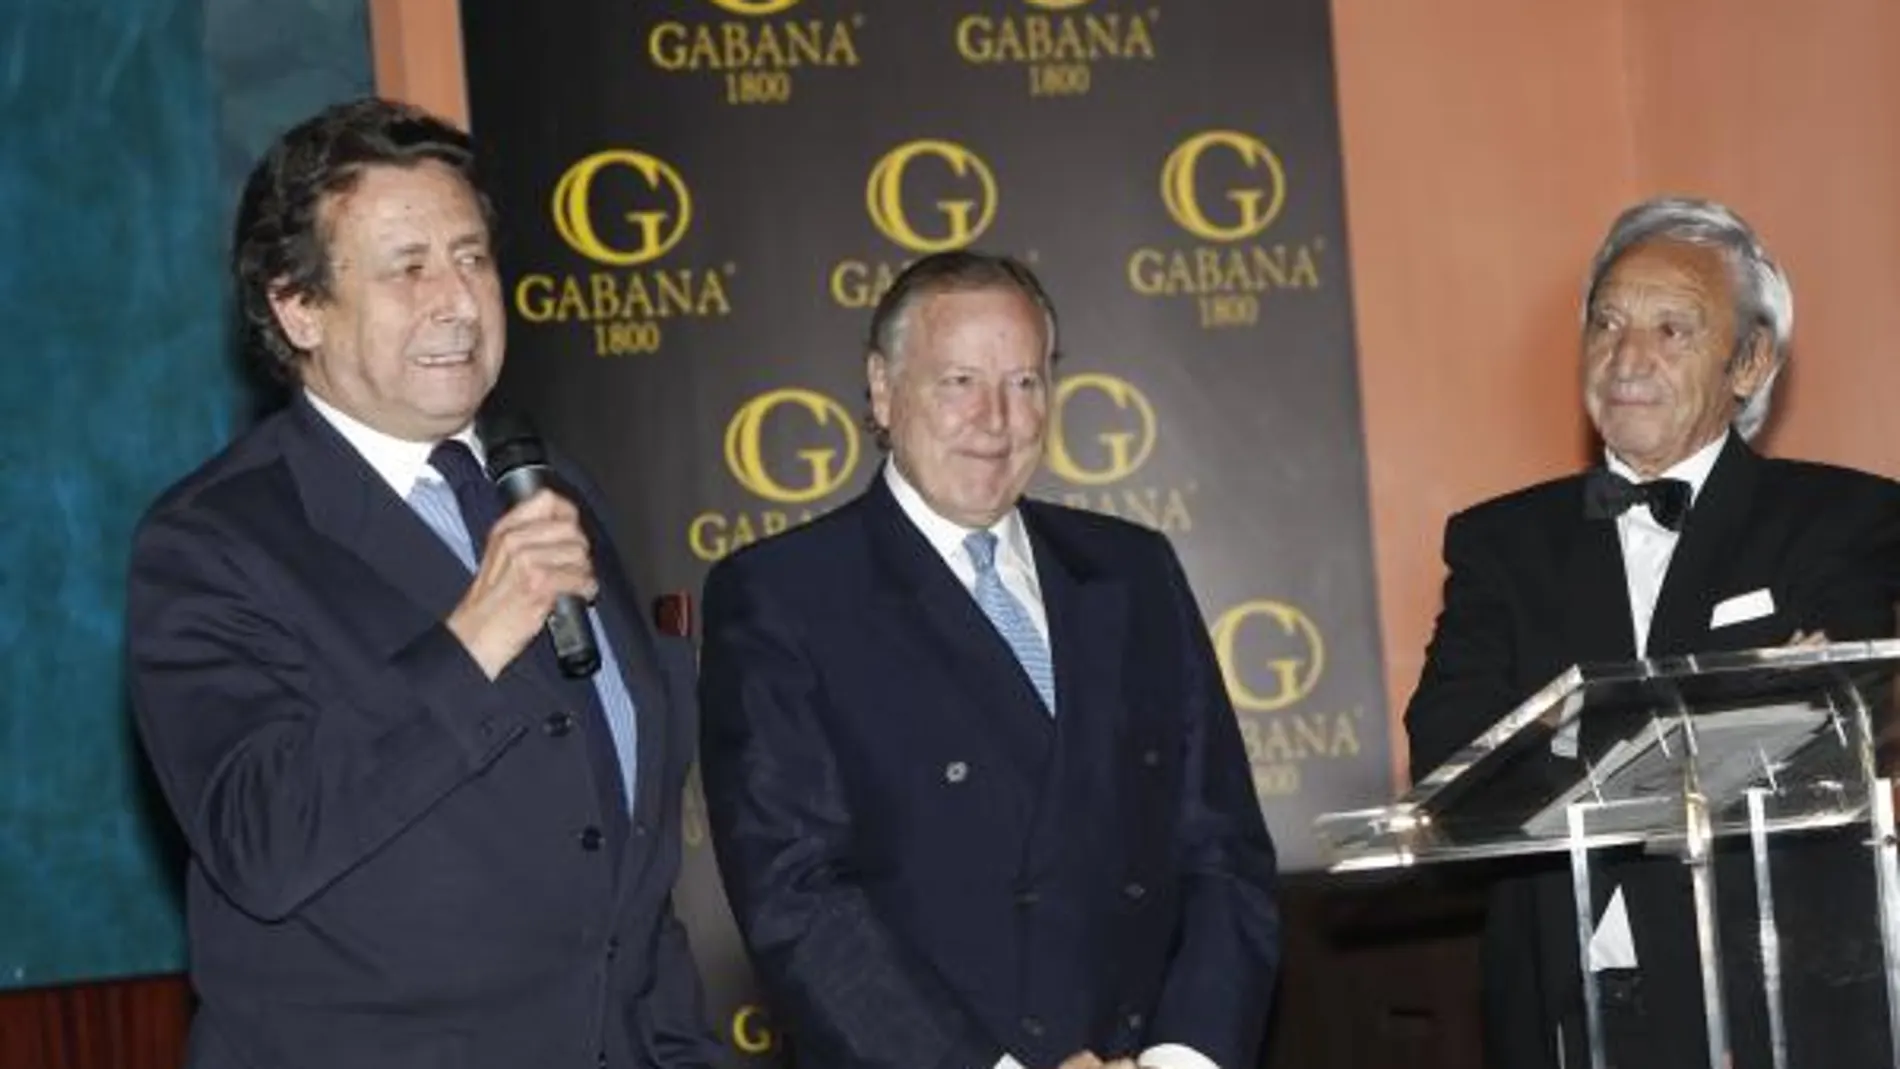 Alfonso Ussía, El Juli y Bautista, premiados por Gabana